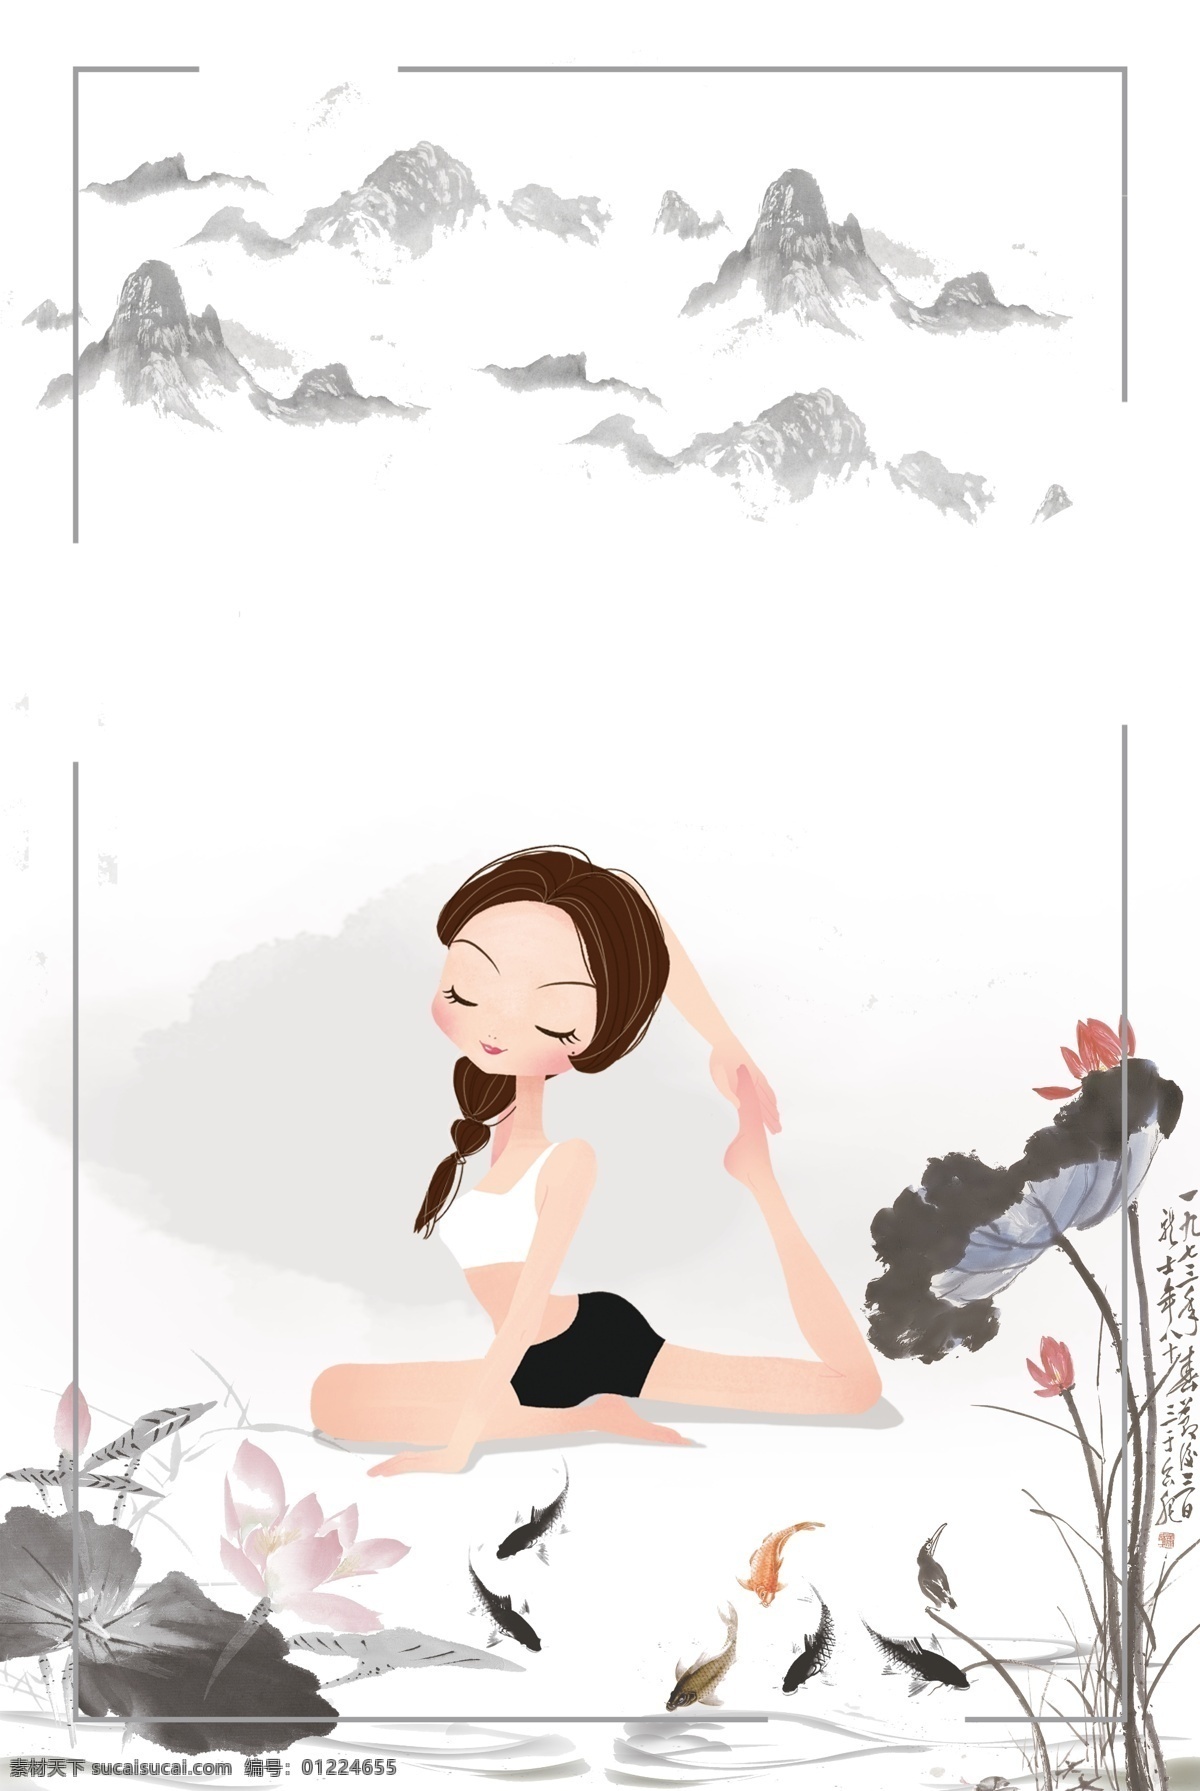 中国 风 手绘 瑜珈 美女 广告 背景 古典 瑜伽 荷花 瑜伽手绘 瑜伽背景 瑜伽美女 瑜伽身材 瑜伽文化 瑜伽养生 中国风 分层 背景素材